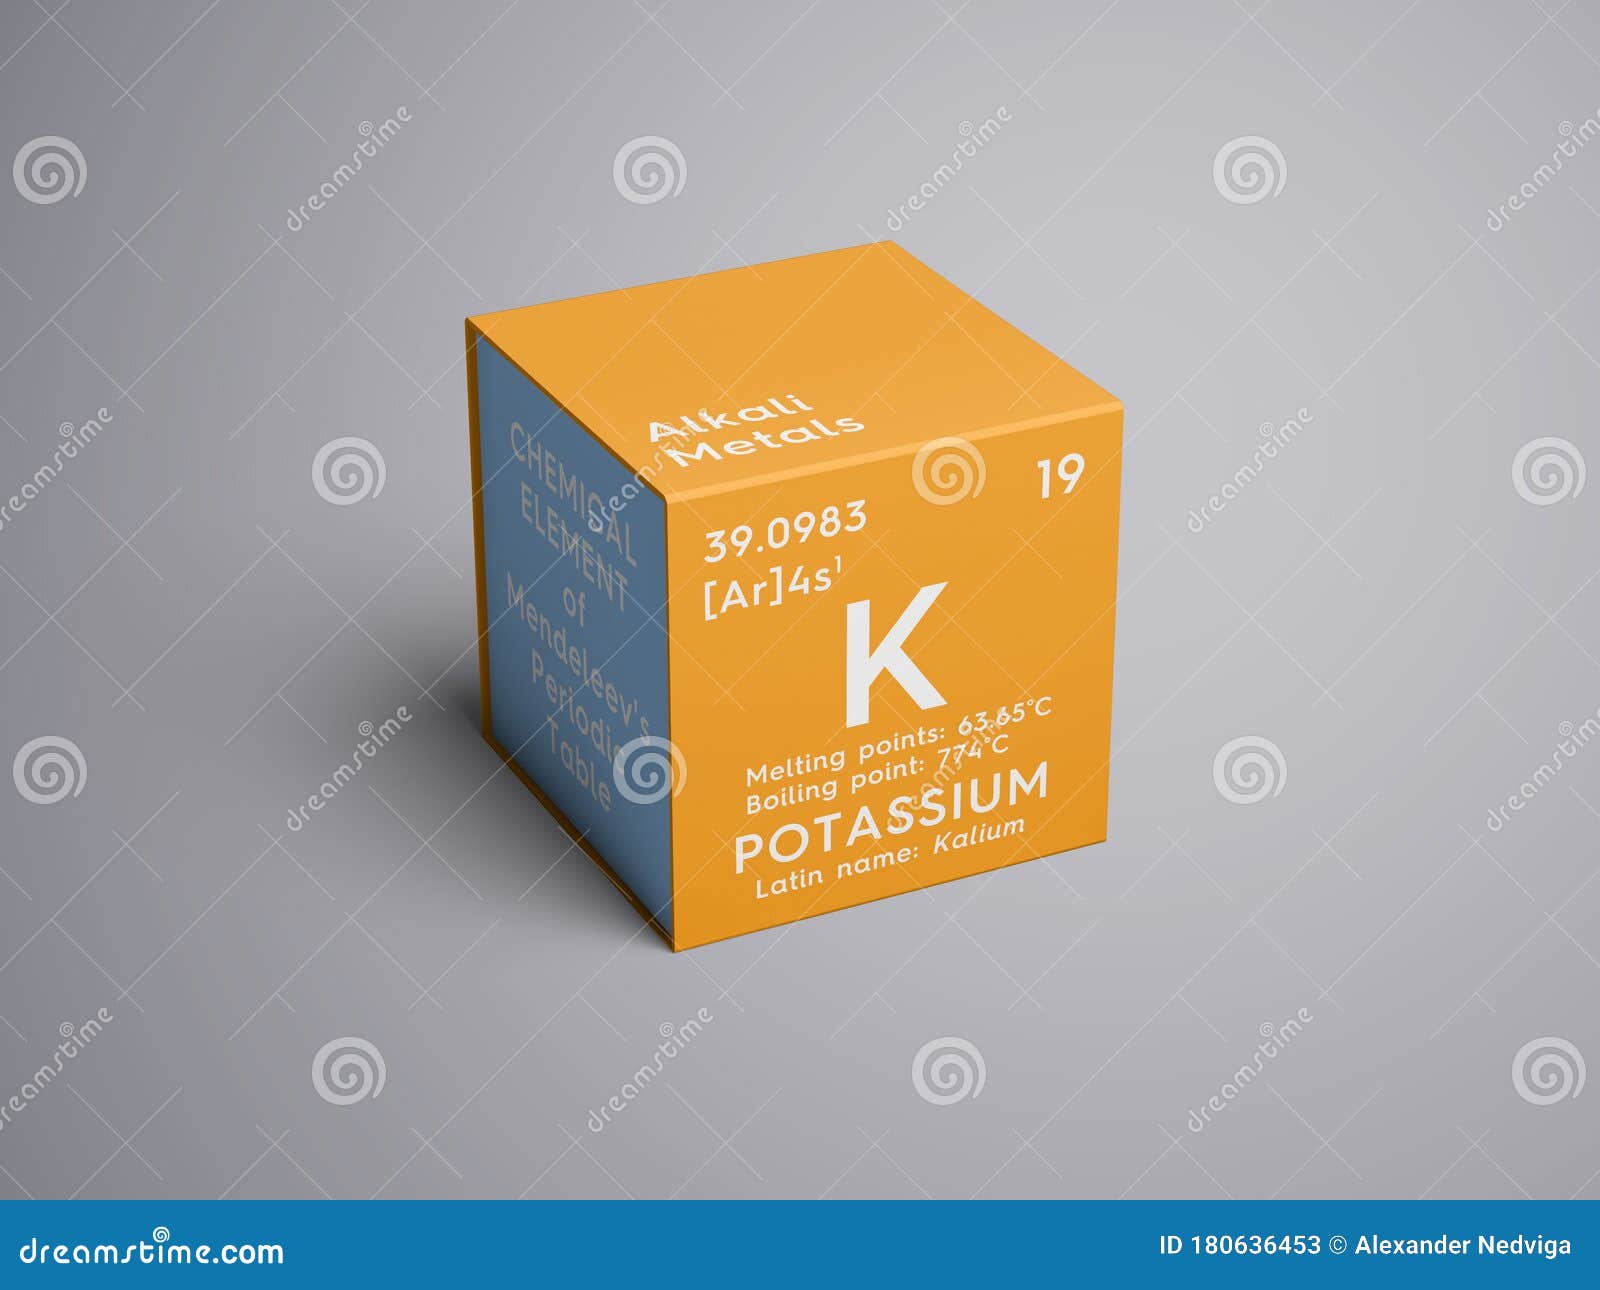 Ik heb het erkend Reserve te rechtvaardigen Potassium. Kalium. Alkali Metals. Chemical Element of Mendeleev S Periodic  Table 3D Illustration Stock Illustration - Illustration of element, table:  180636453